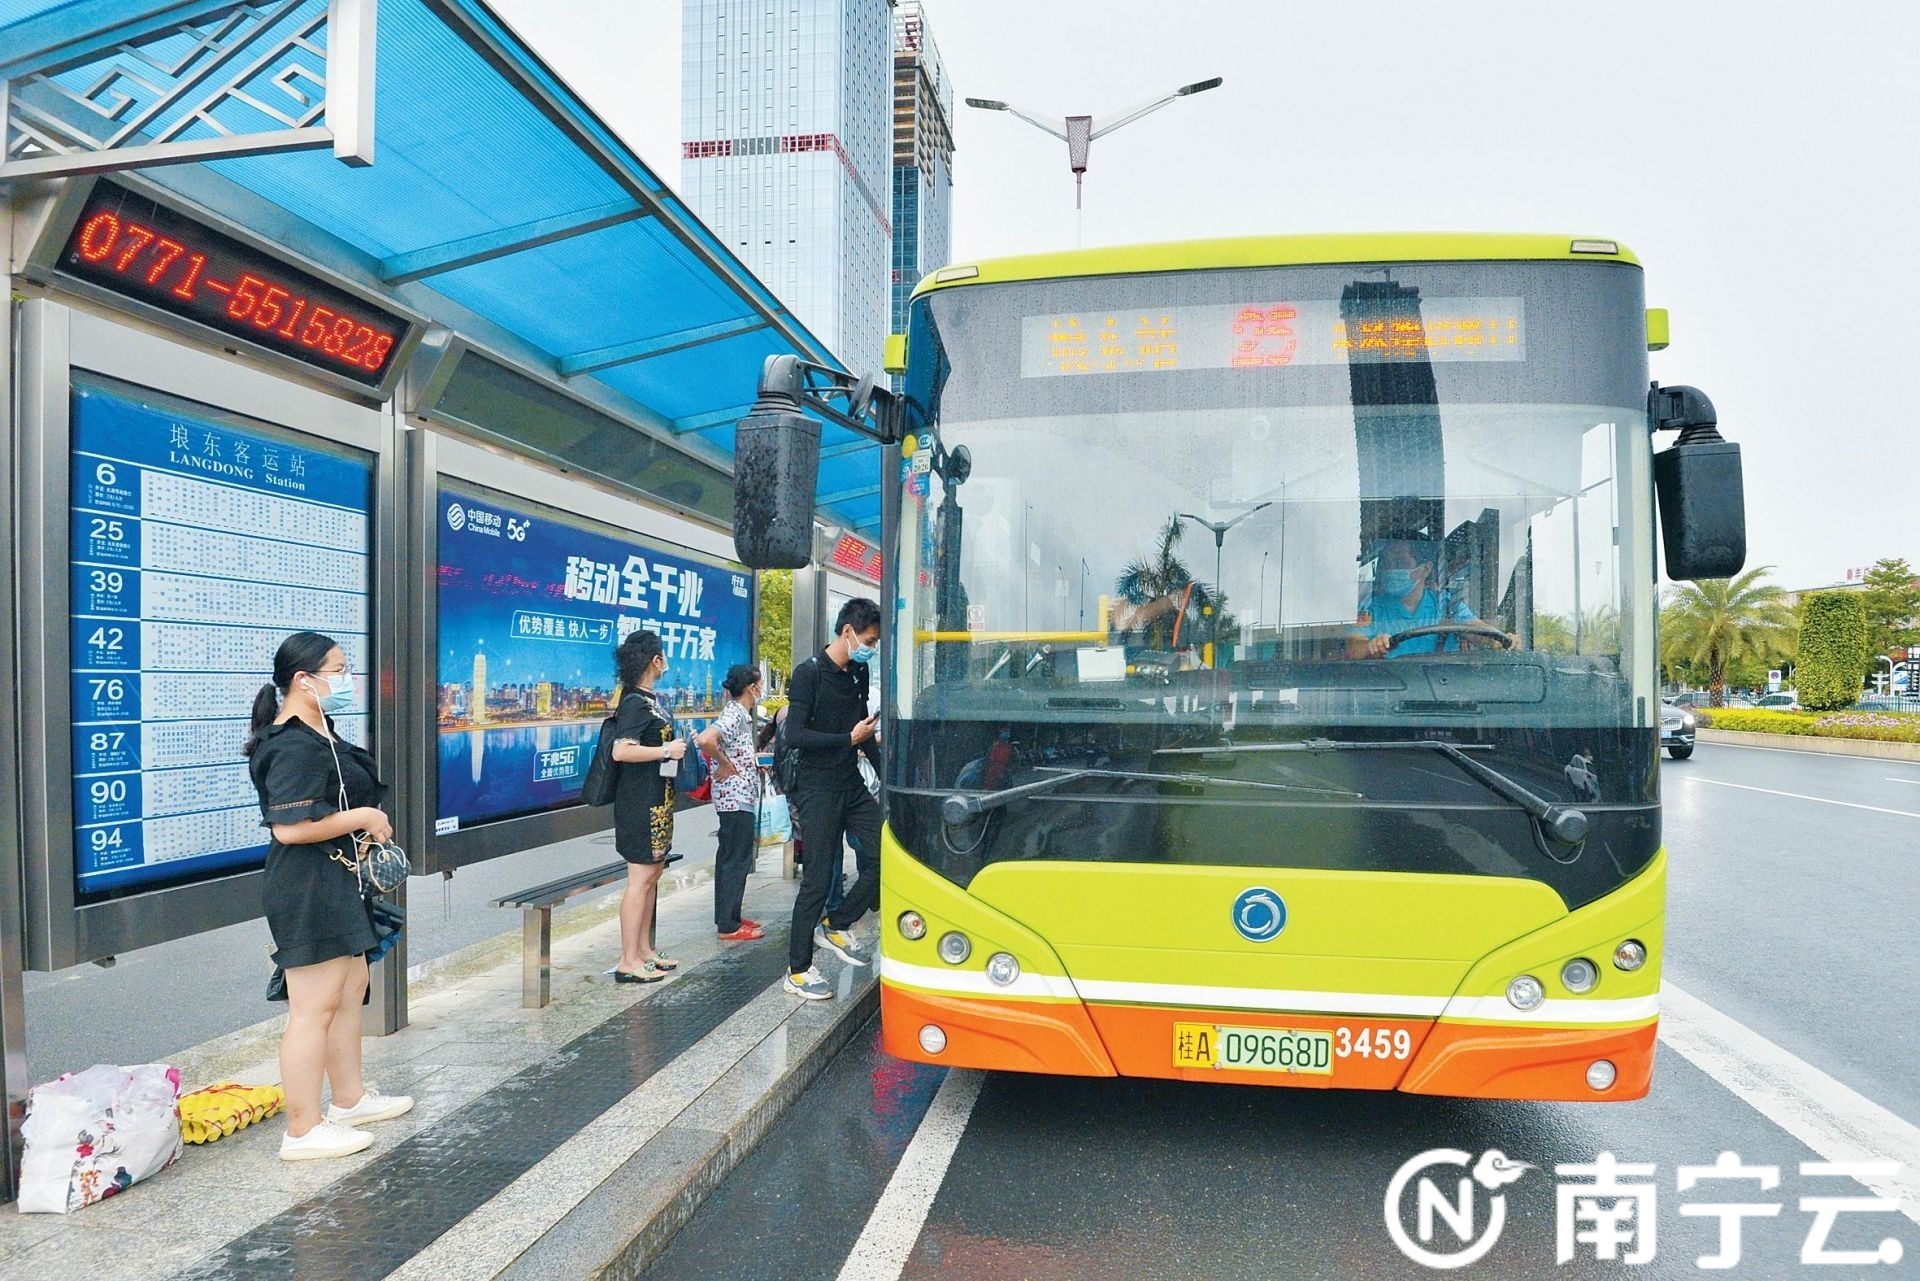 南宁市大力创建公交都市初步形成现代化高质量公共交通体系